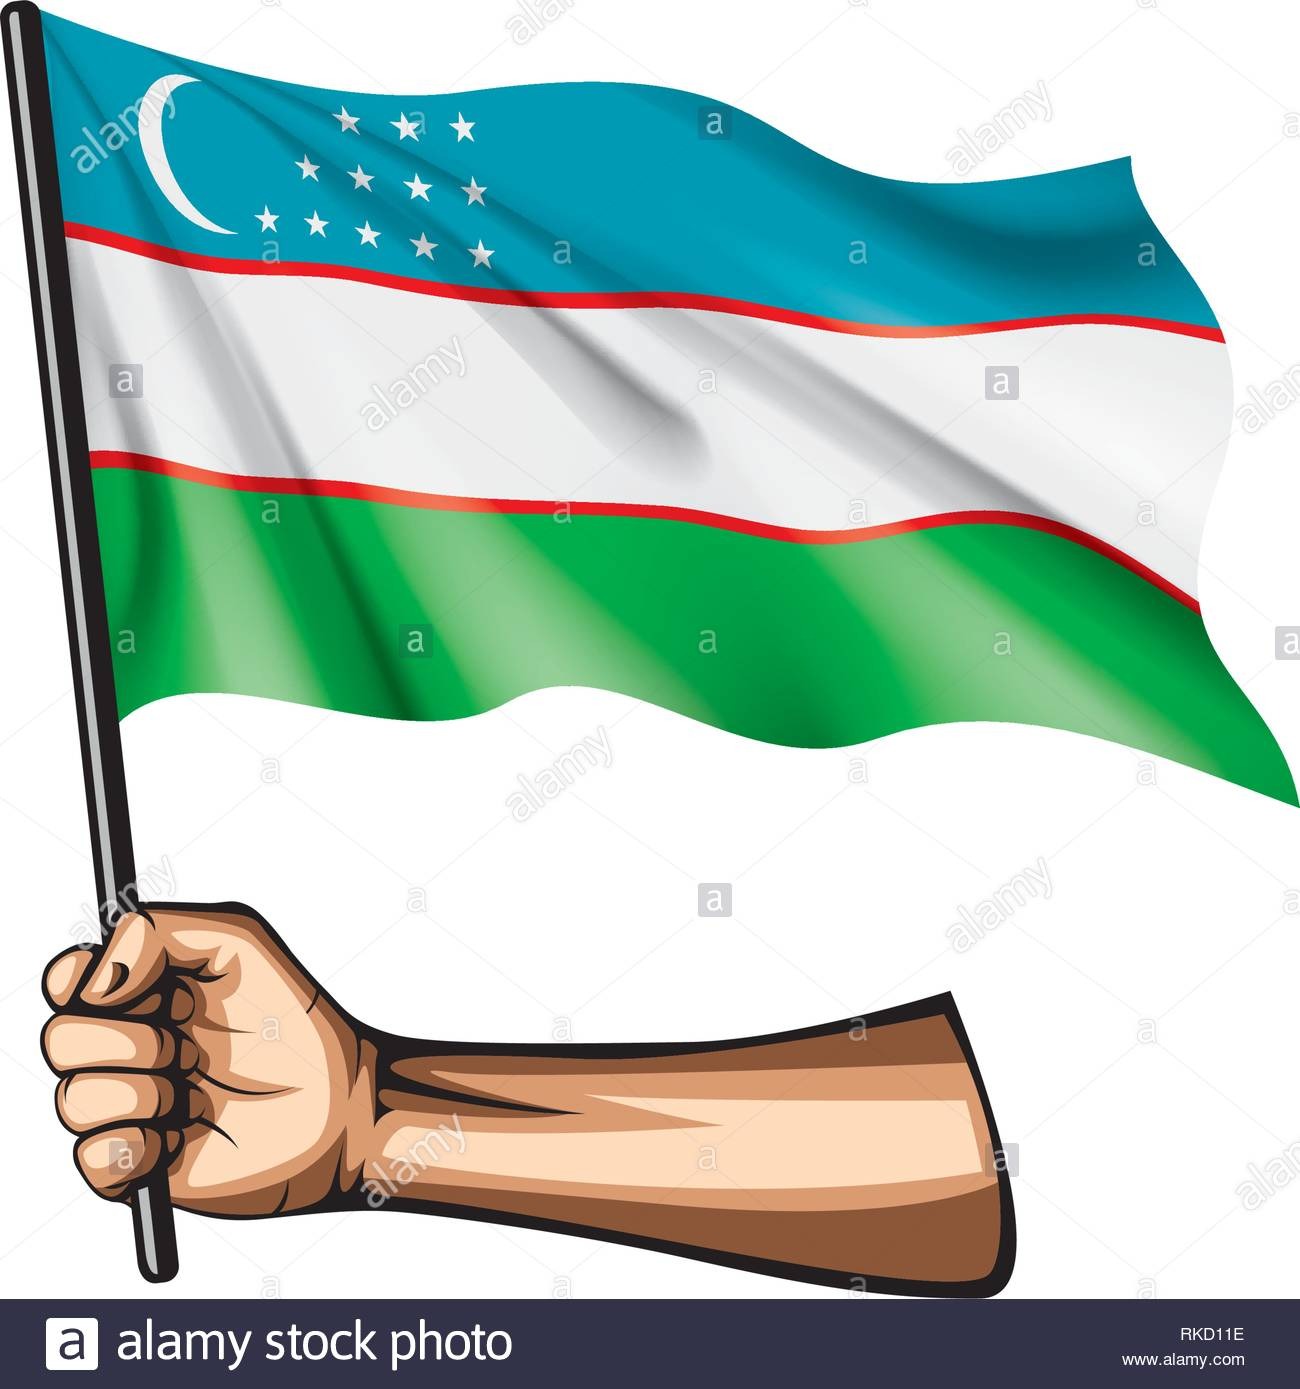 Рисунок на тему флаг узбекистана